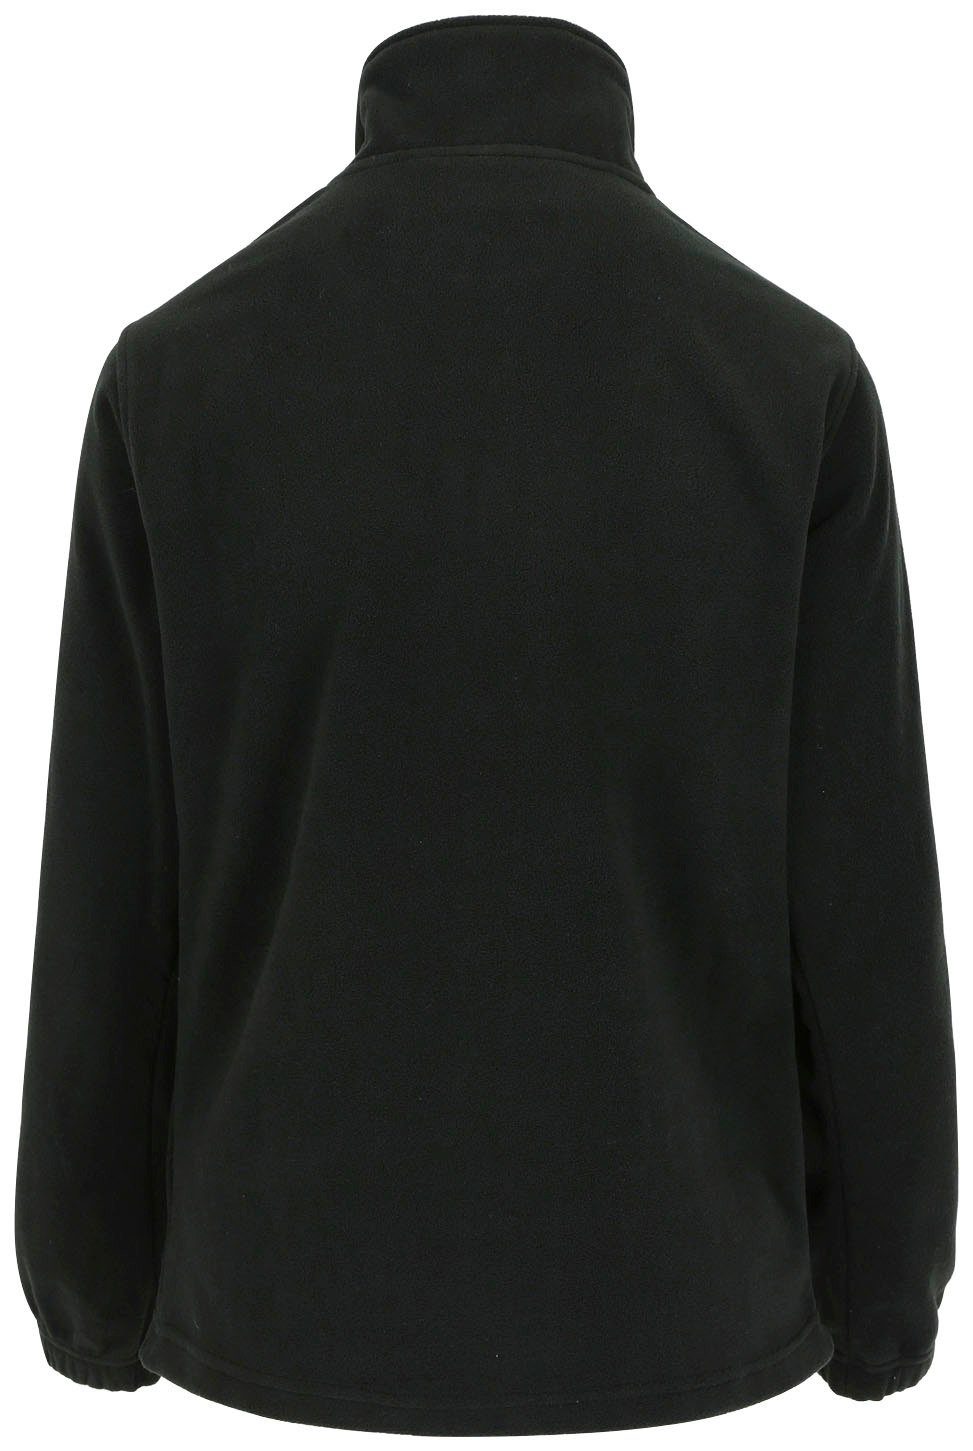 Damenfleecepullover mit elastichem Herock kurzem Aurora-Demen Reißverschluss schwarz und Bündchen Fleece-Sweater Stehkragenpullover